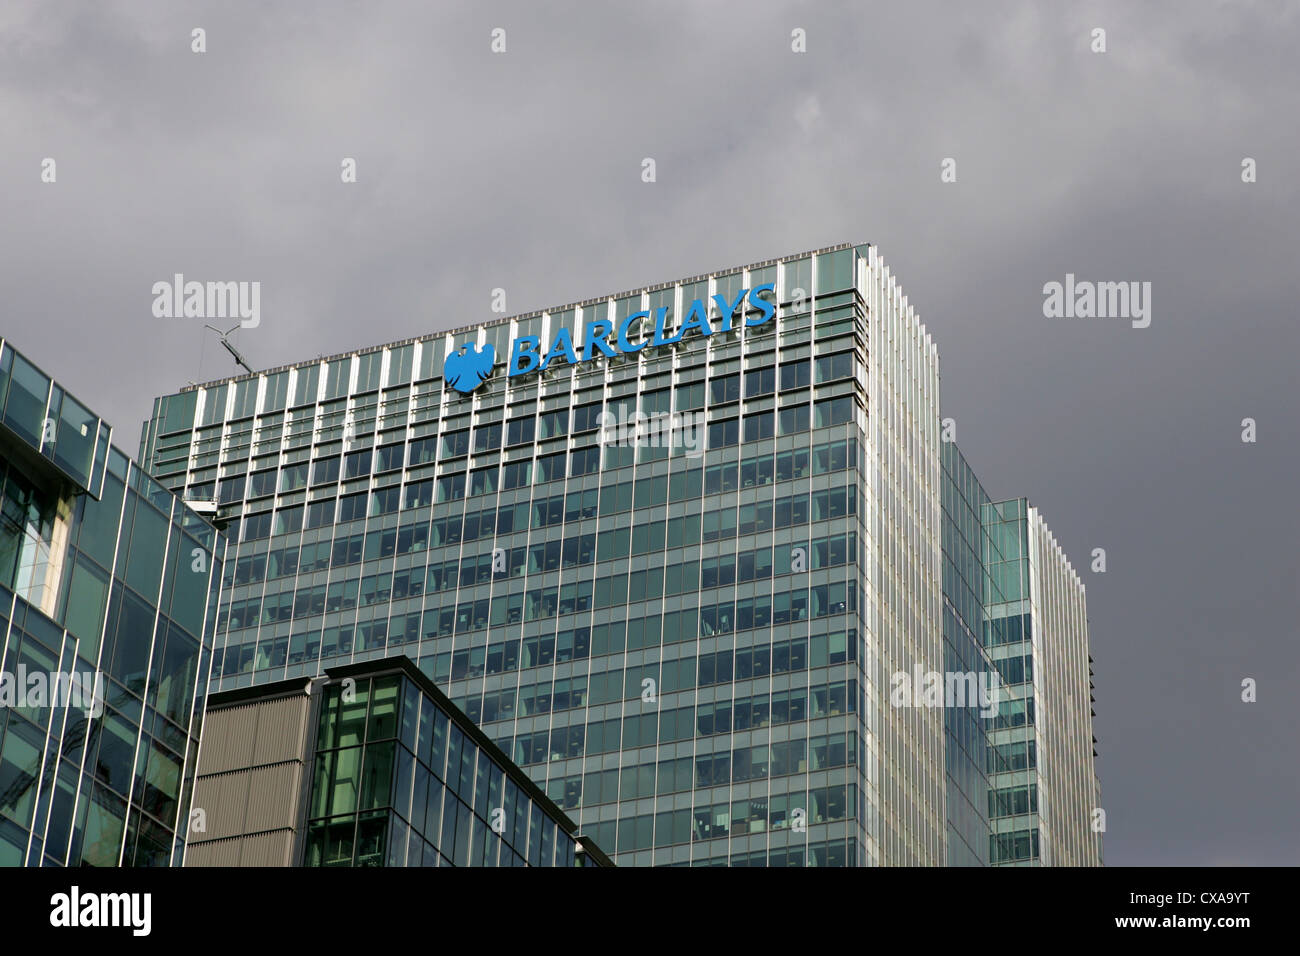 Sombres nuages sur le bâtiment abritant le siège social de la banque Barclays, canary wharf - Docklands Londres Banque D'Images